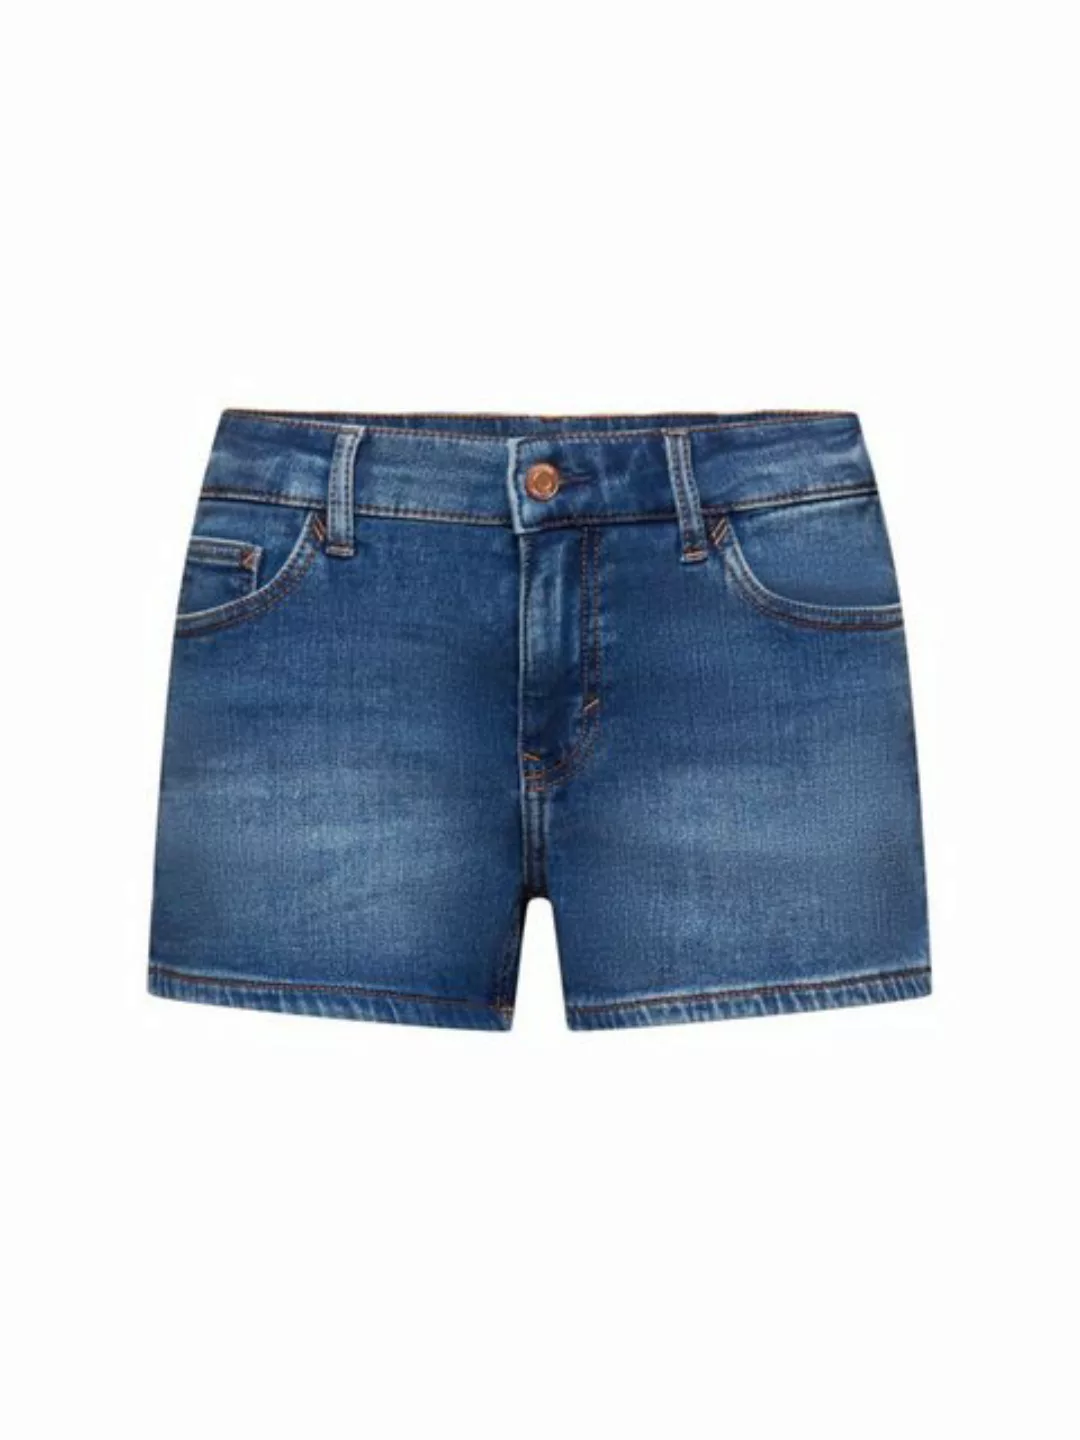 Esprit Jeansshorts Jeans-Shorts mit mittelhohem Bund günstig online kaufen